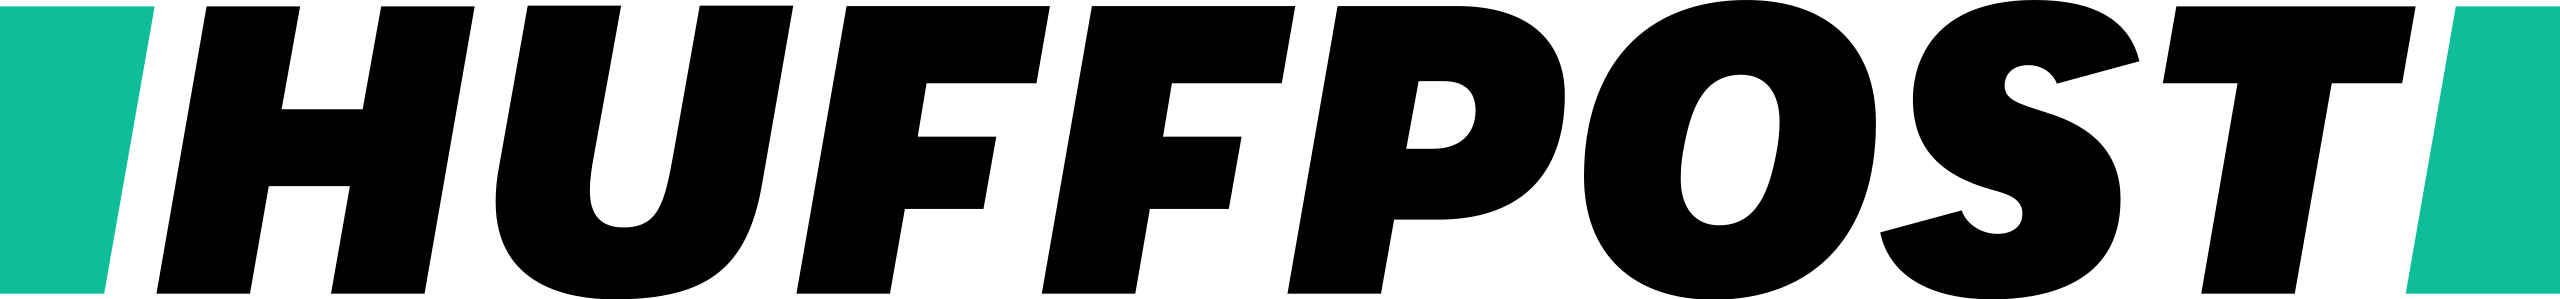 huffpost logo vector